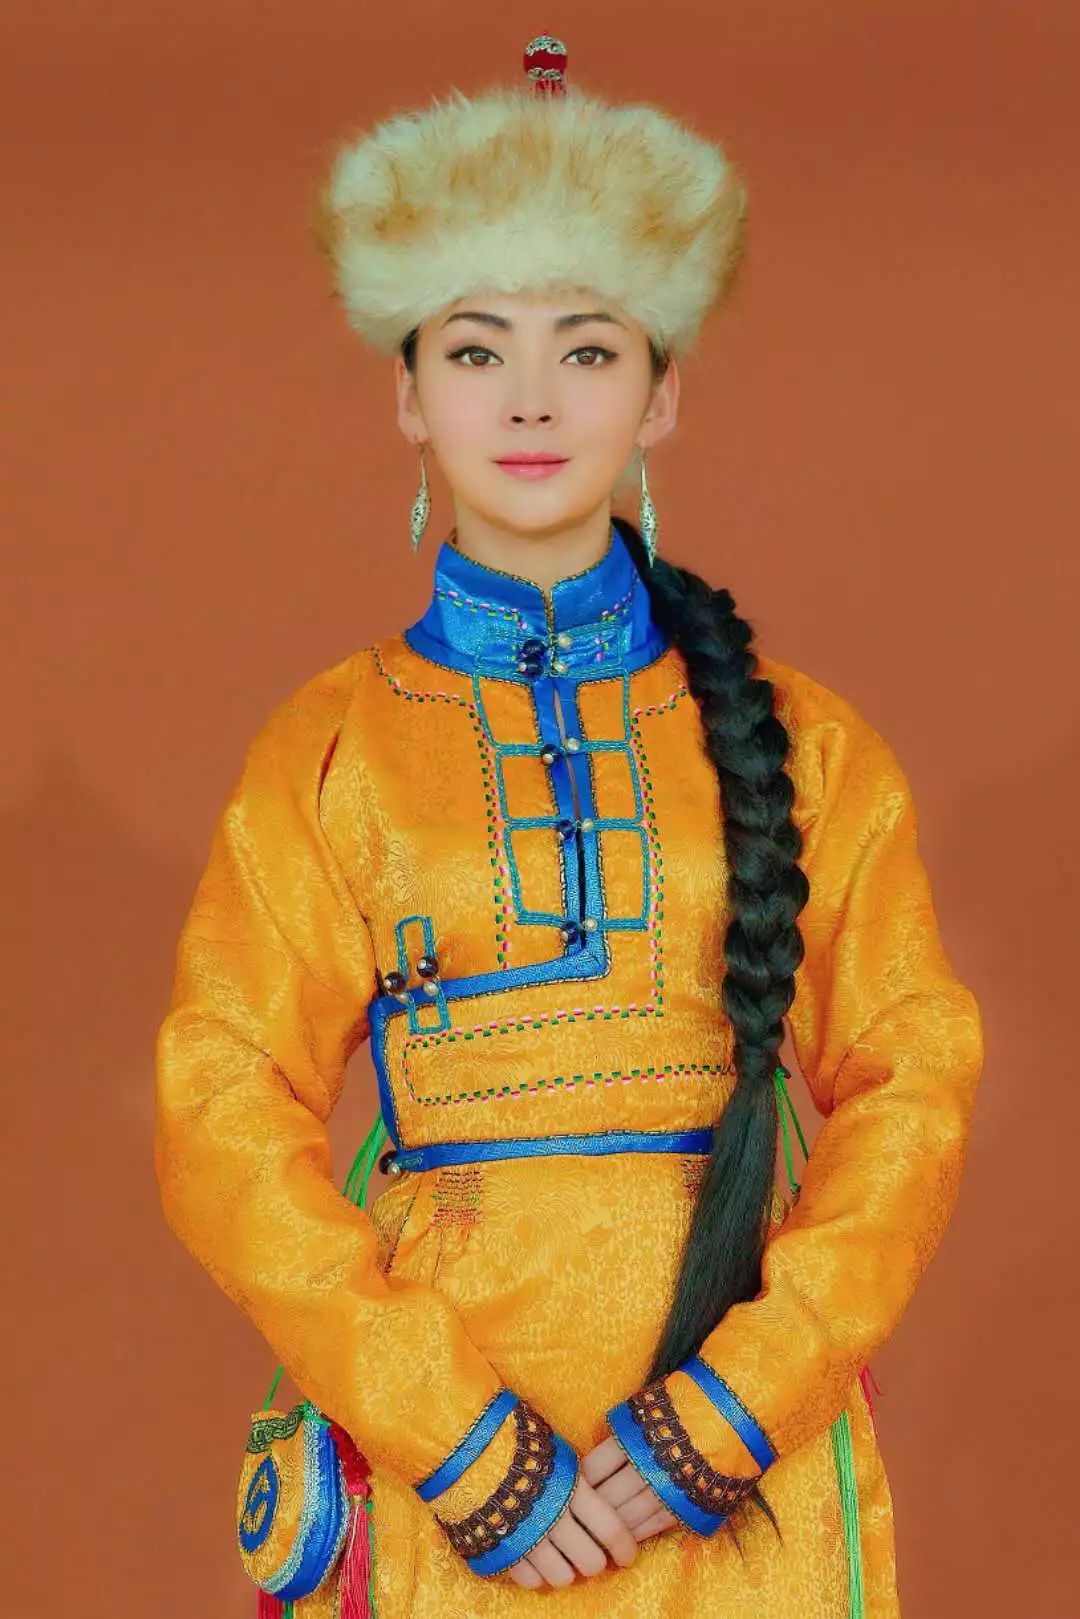 内蒙古阿拉善文化旅游形象大使,蒙古土尔扈特部第十五代公主,中国蓝